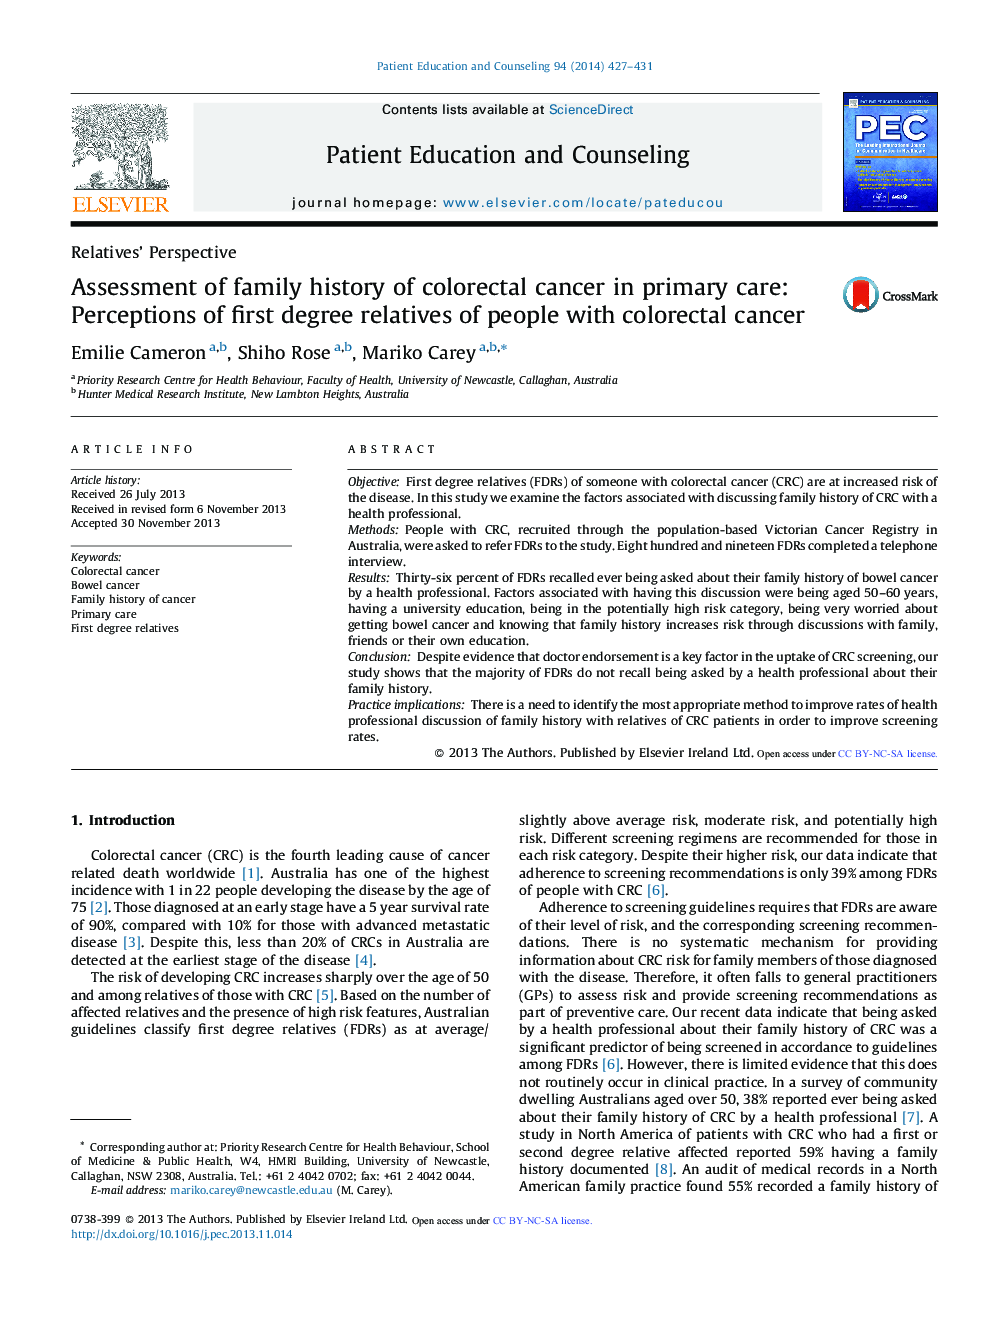 بررسی سابقه خانوادگی سرطان کولورکتال در مراقبتهای اولیه: ادراک بستگان درجه اول افراد مبتلا به سرطان کولورکتال 